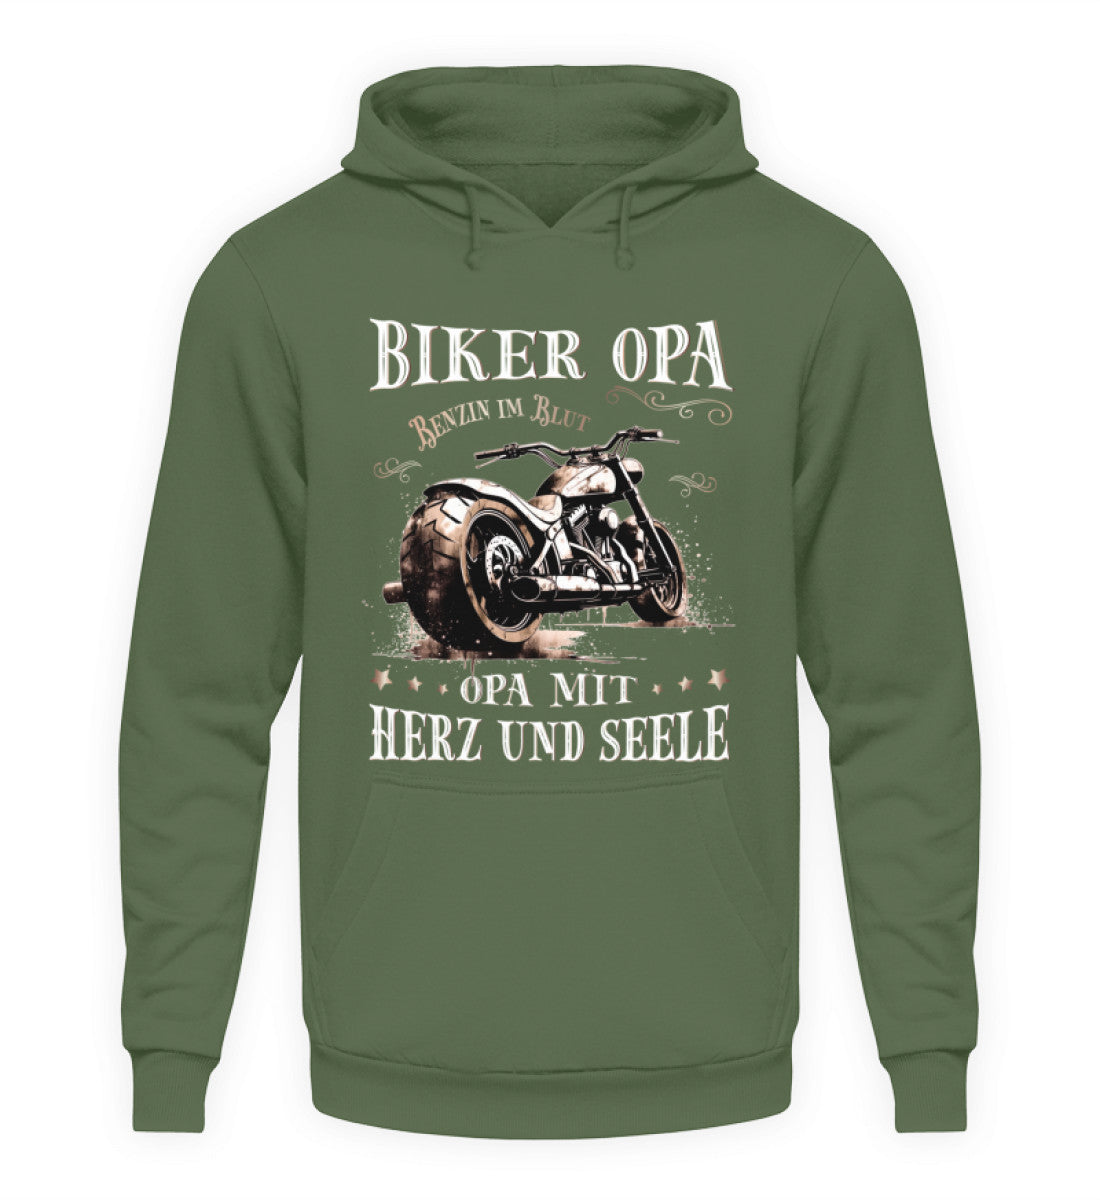 Ein Biker Hoodie für Motorradfahrer von Wingbikers mit dem Aufdruck, Biker Opa - Benzin im Blut - Opa mit Herz und Seele, in erdgrün.